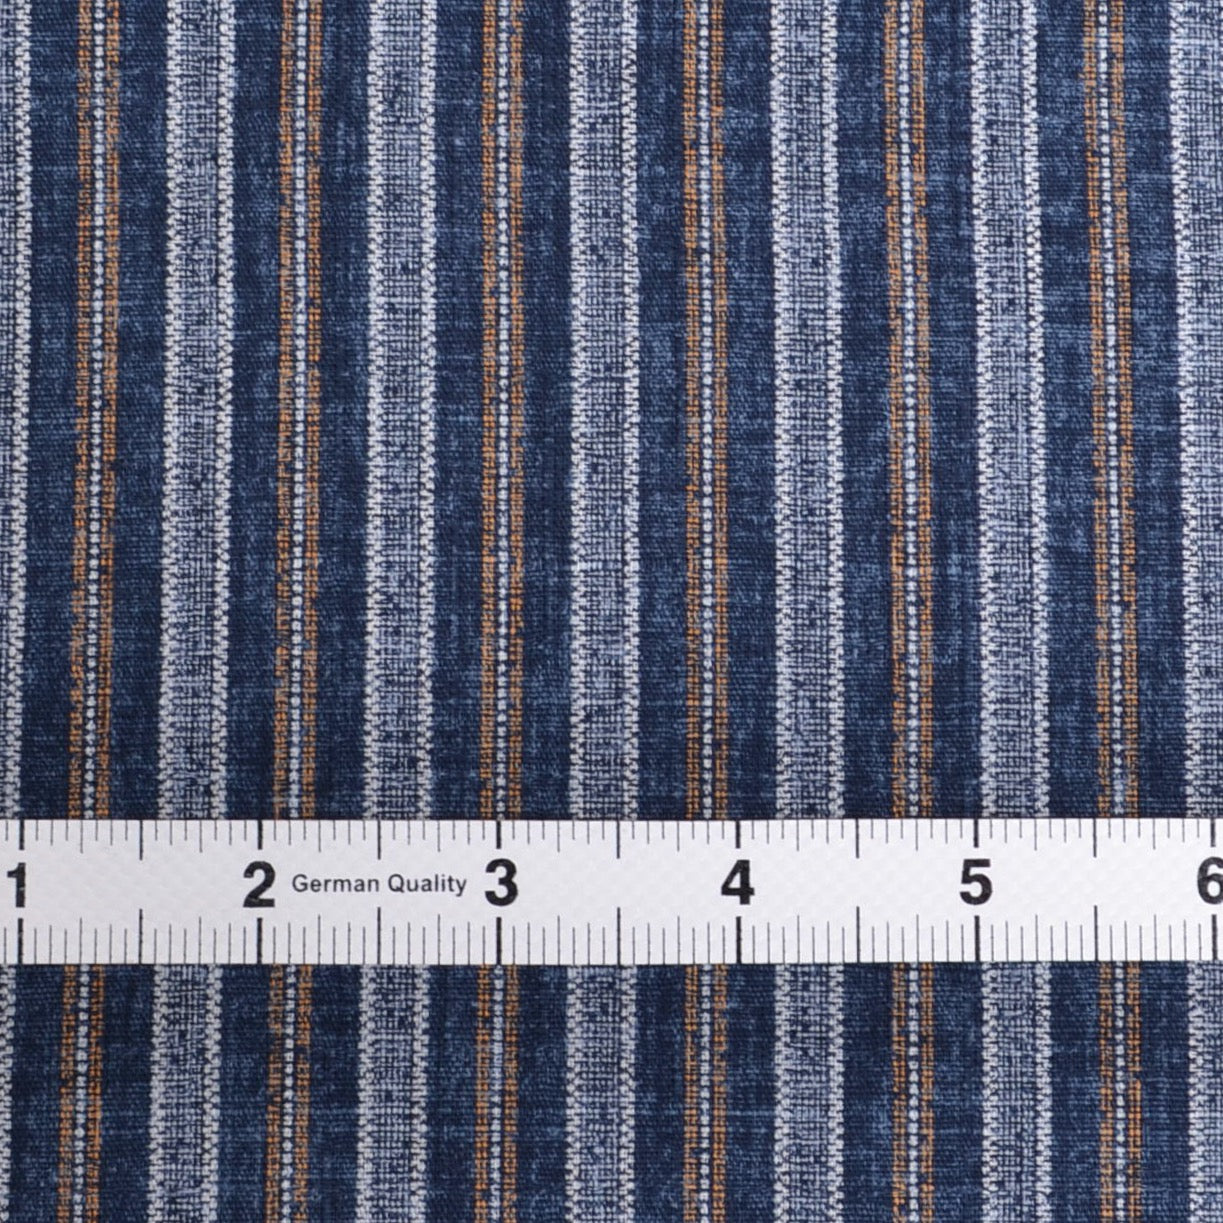 Morikiku striped cotton fabric from Japan